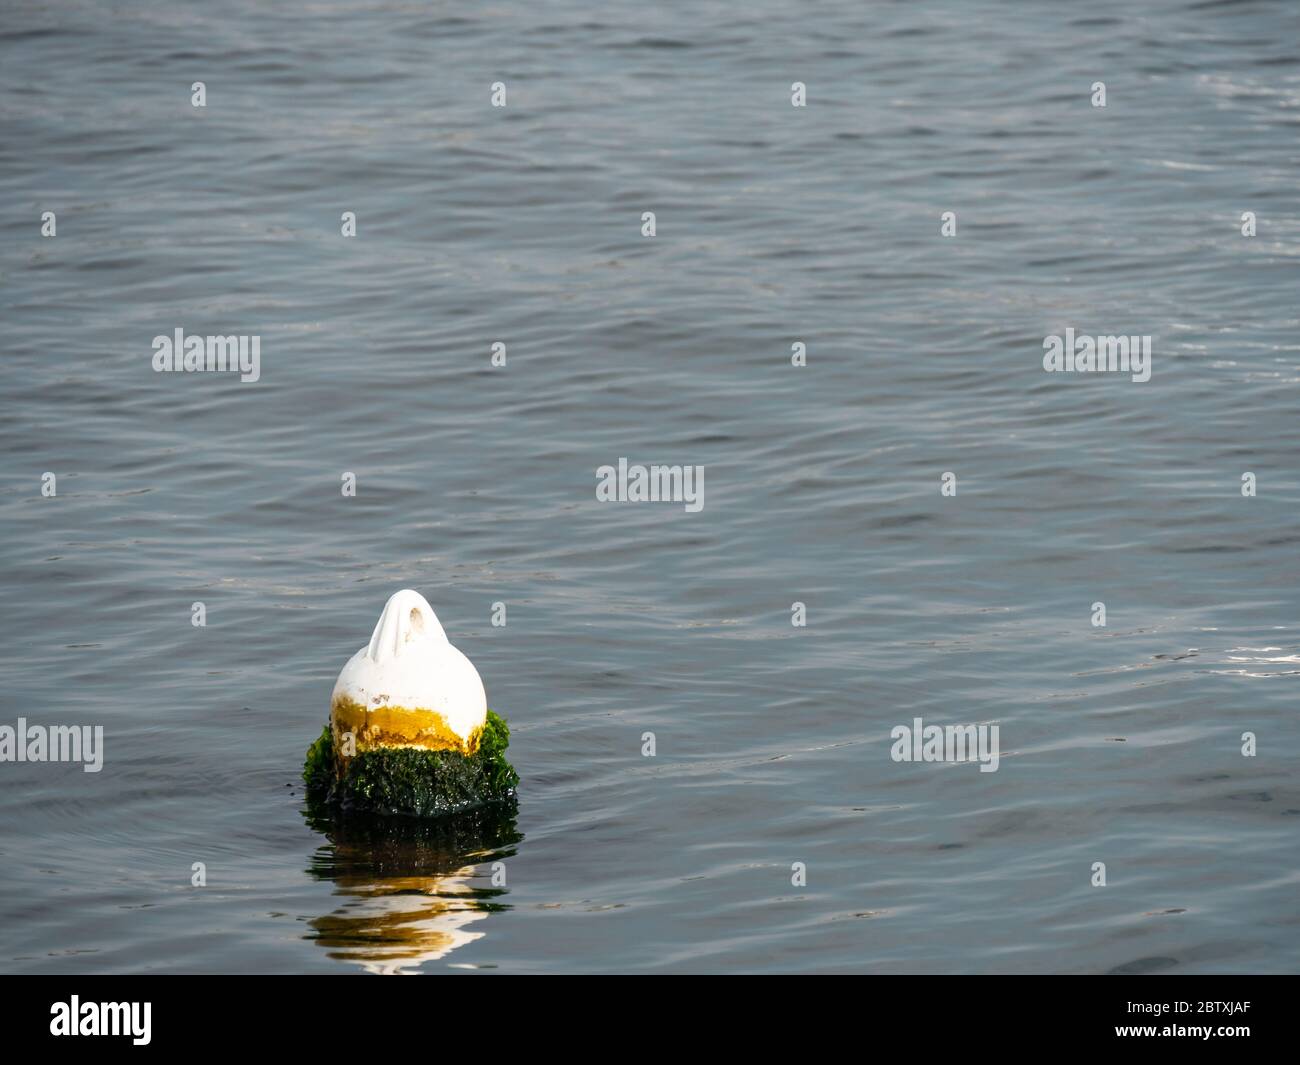 Une bouée blanche sur une surface de mer calme à la lumière du jour. Banque D'Images